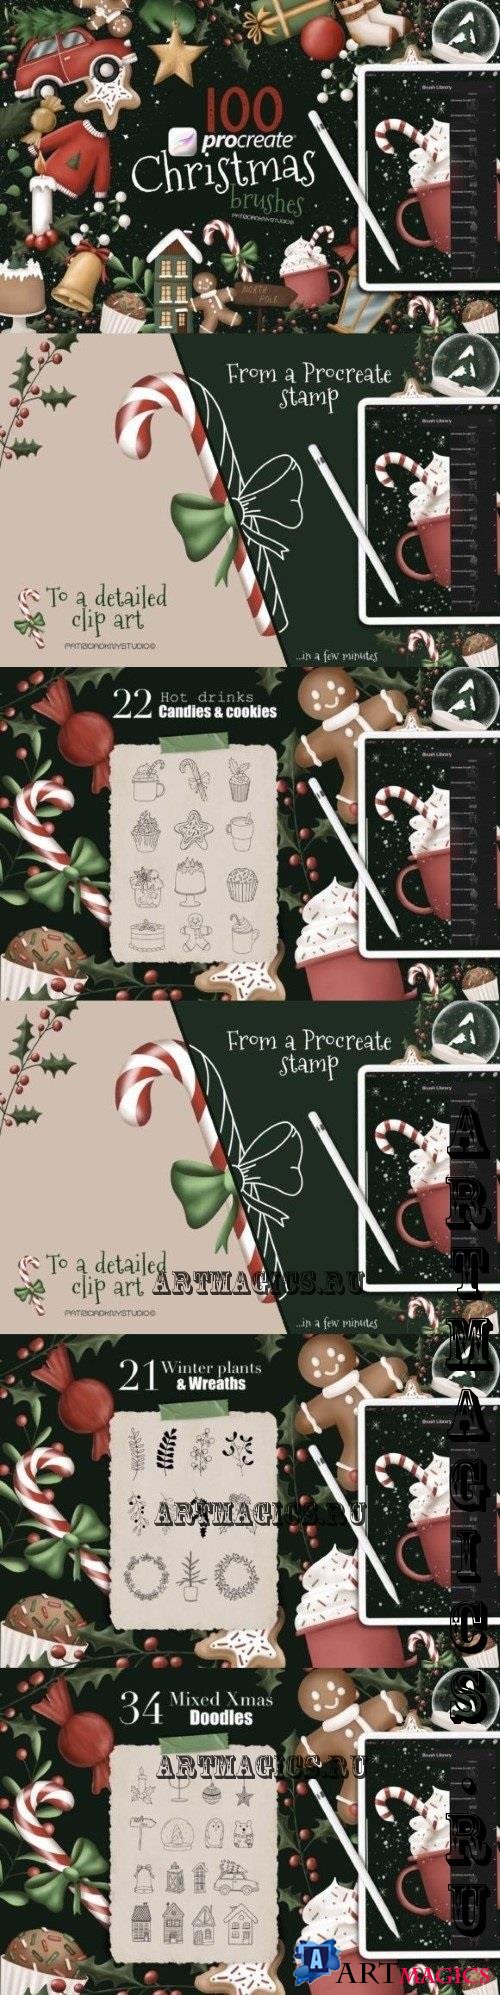 Procreate Christmas doodle brushes - 6455366